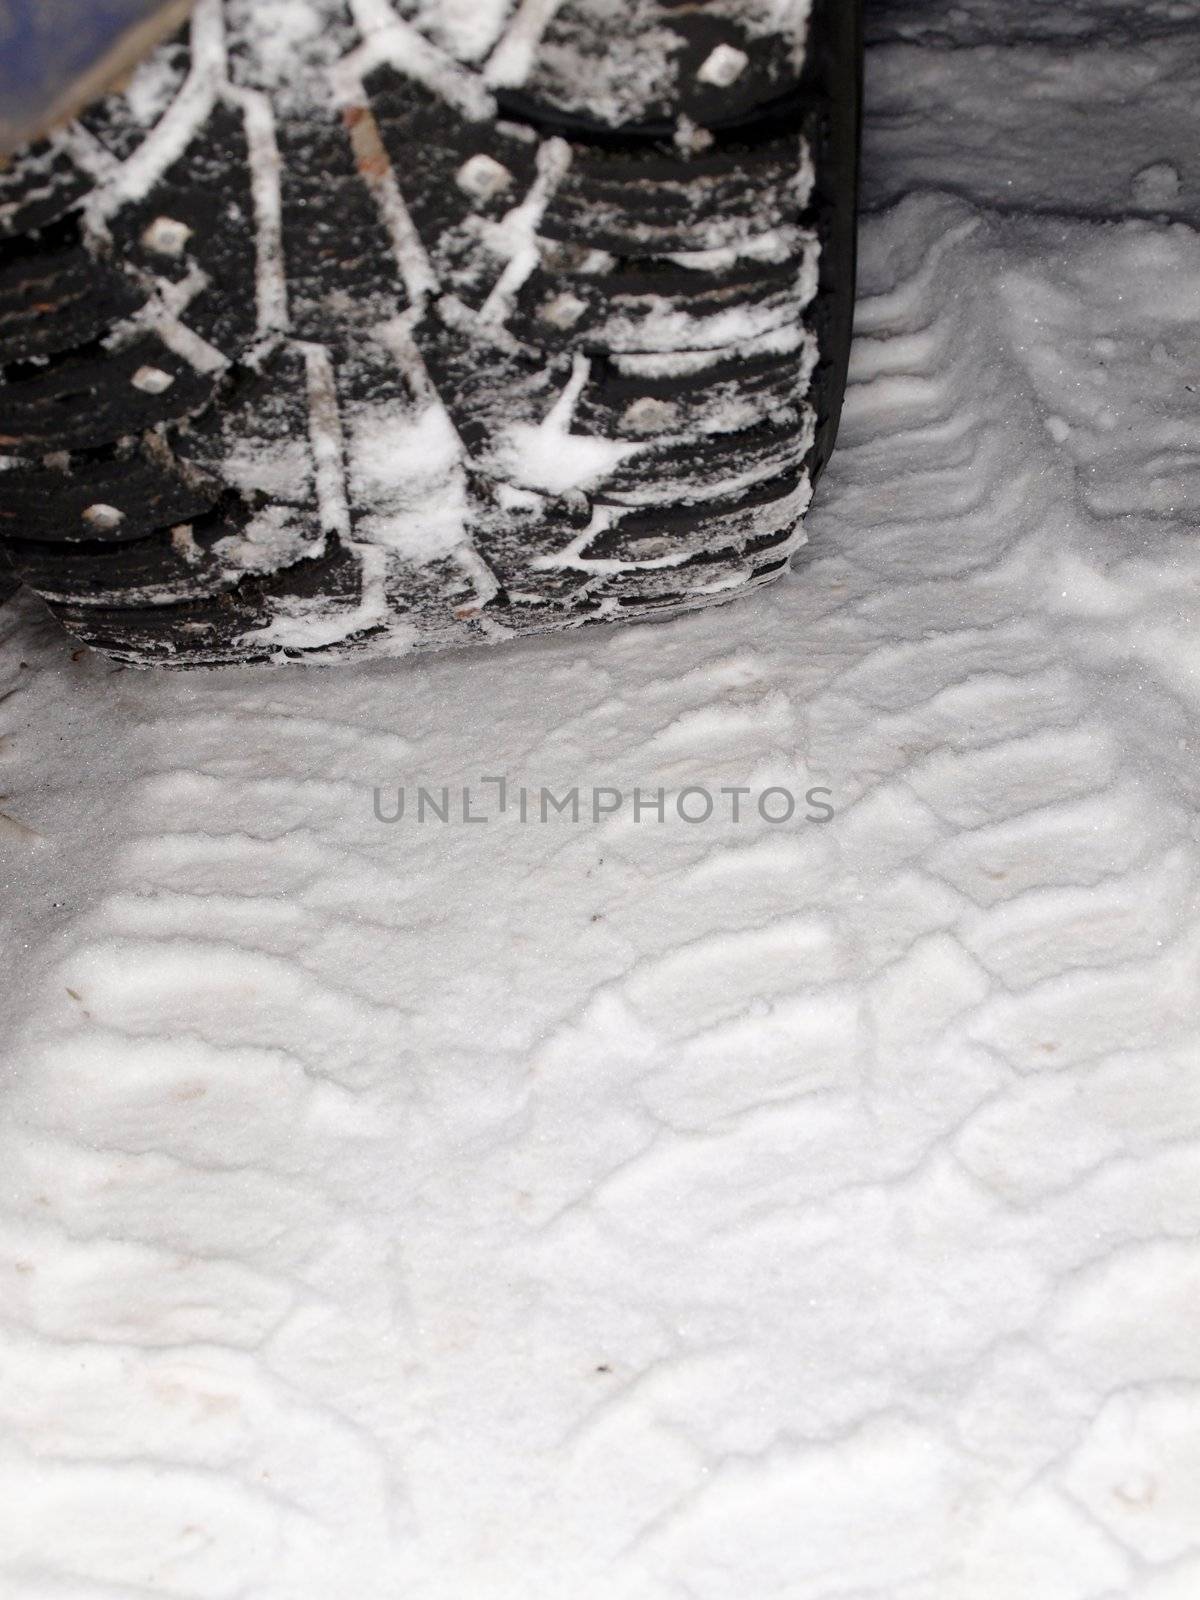 Studded winter tires by Arvebettum